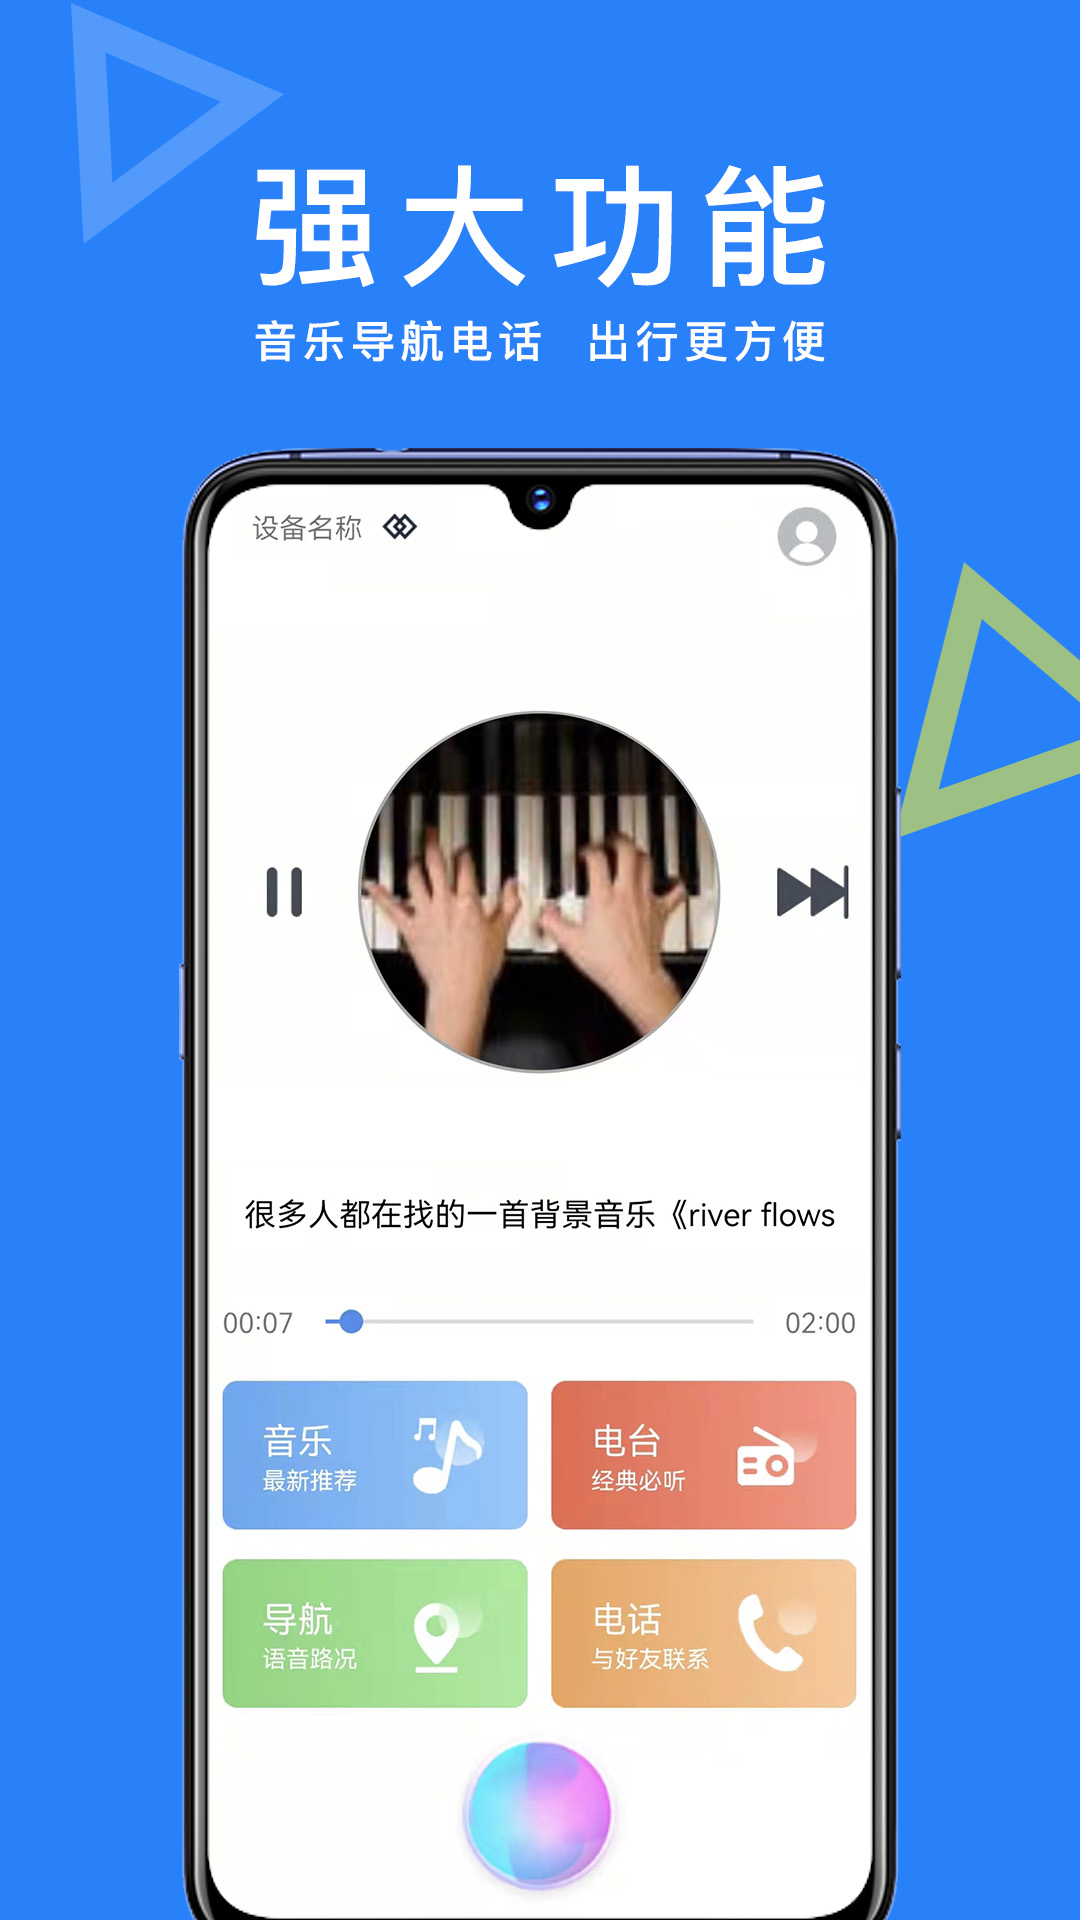 知游小助手官方下载-知游小助手 app 最新版本免费下载-应用宝官网